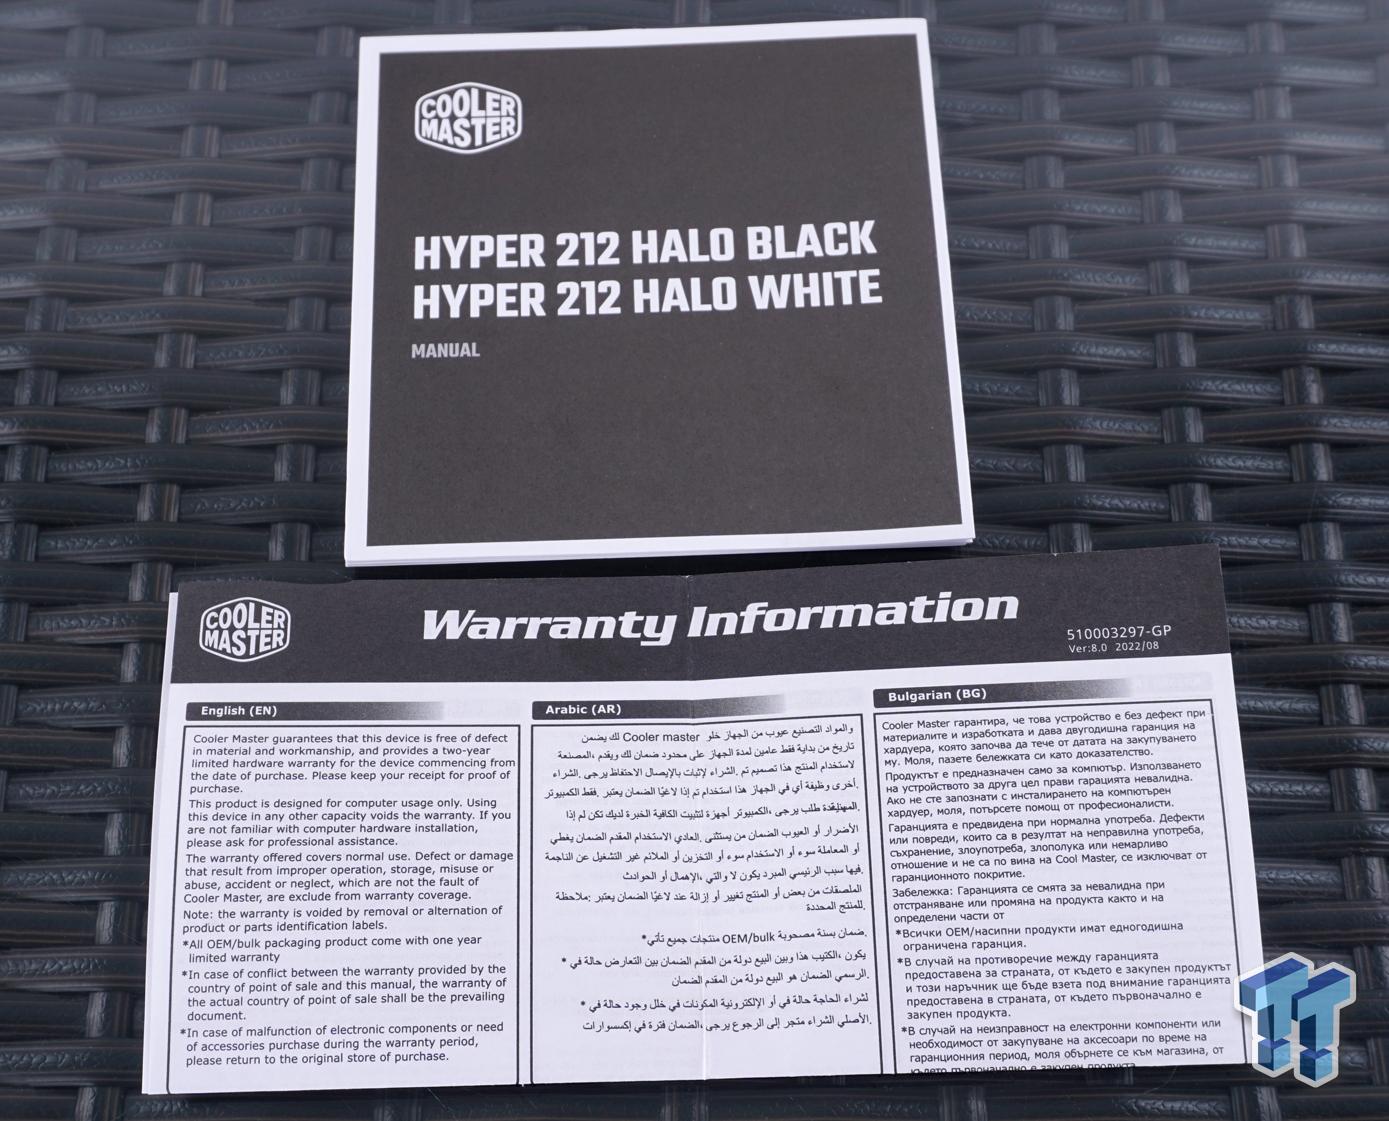 Cooler Master Hyper 212 Halo Black Review